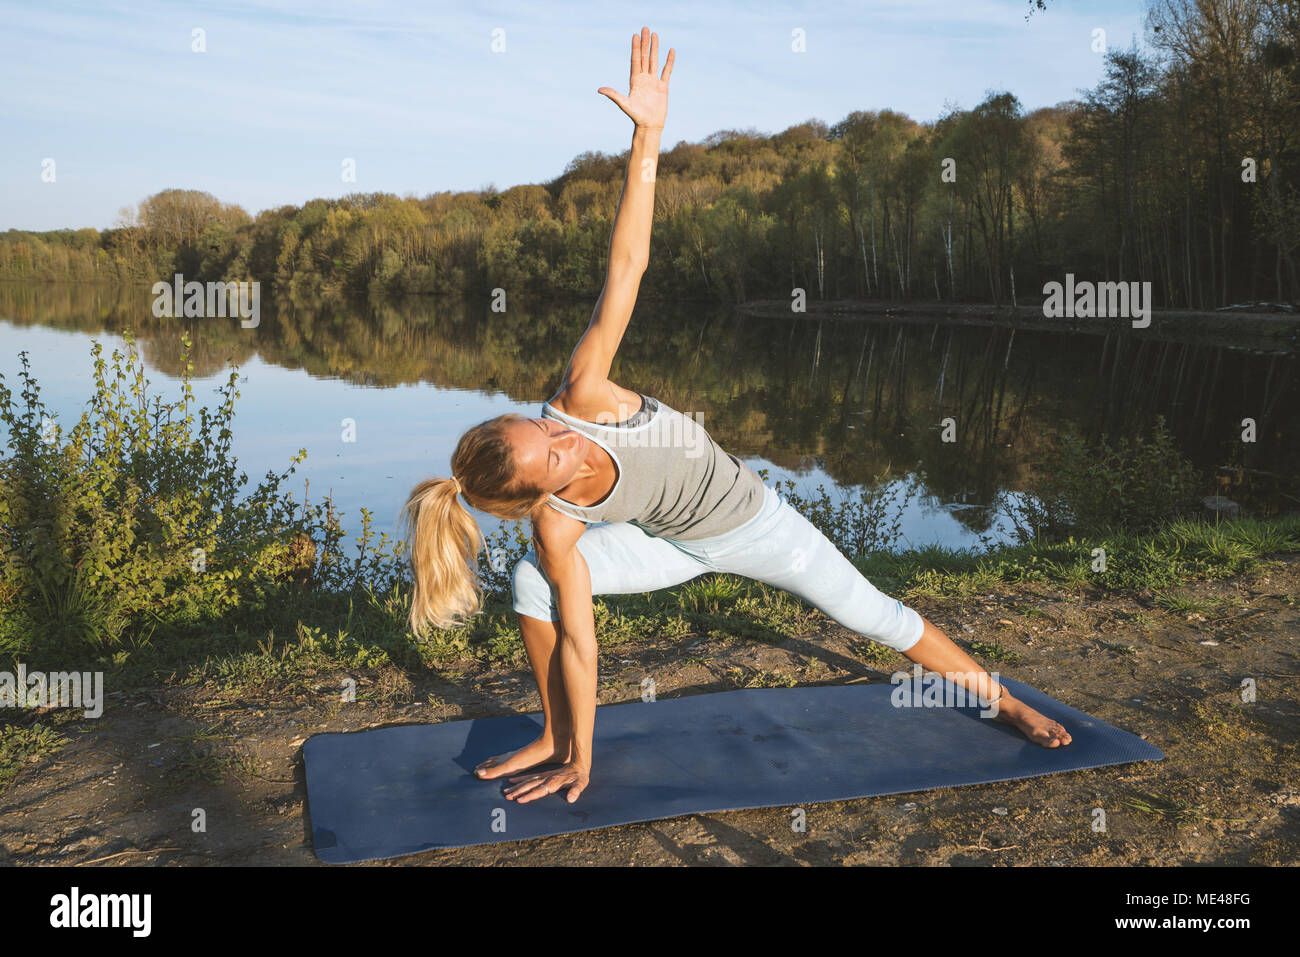 Junge Frau trainieren Yoga am See bei Sonnenuntergang, menschen natur Wohlbefinden und Entspannung Konzept reisen. In Frankreich, Europa erschossen. Stockfoto